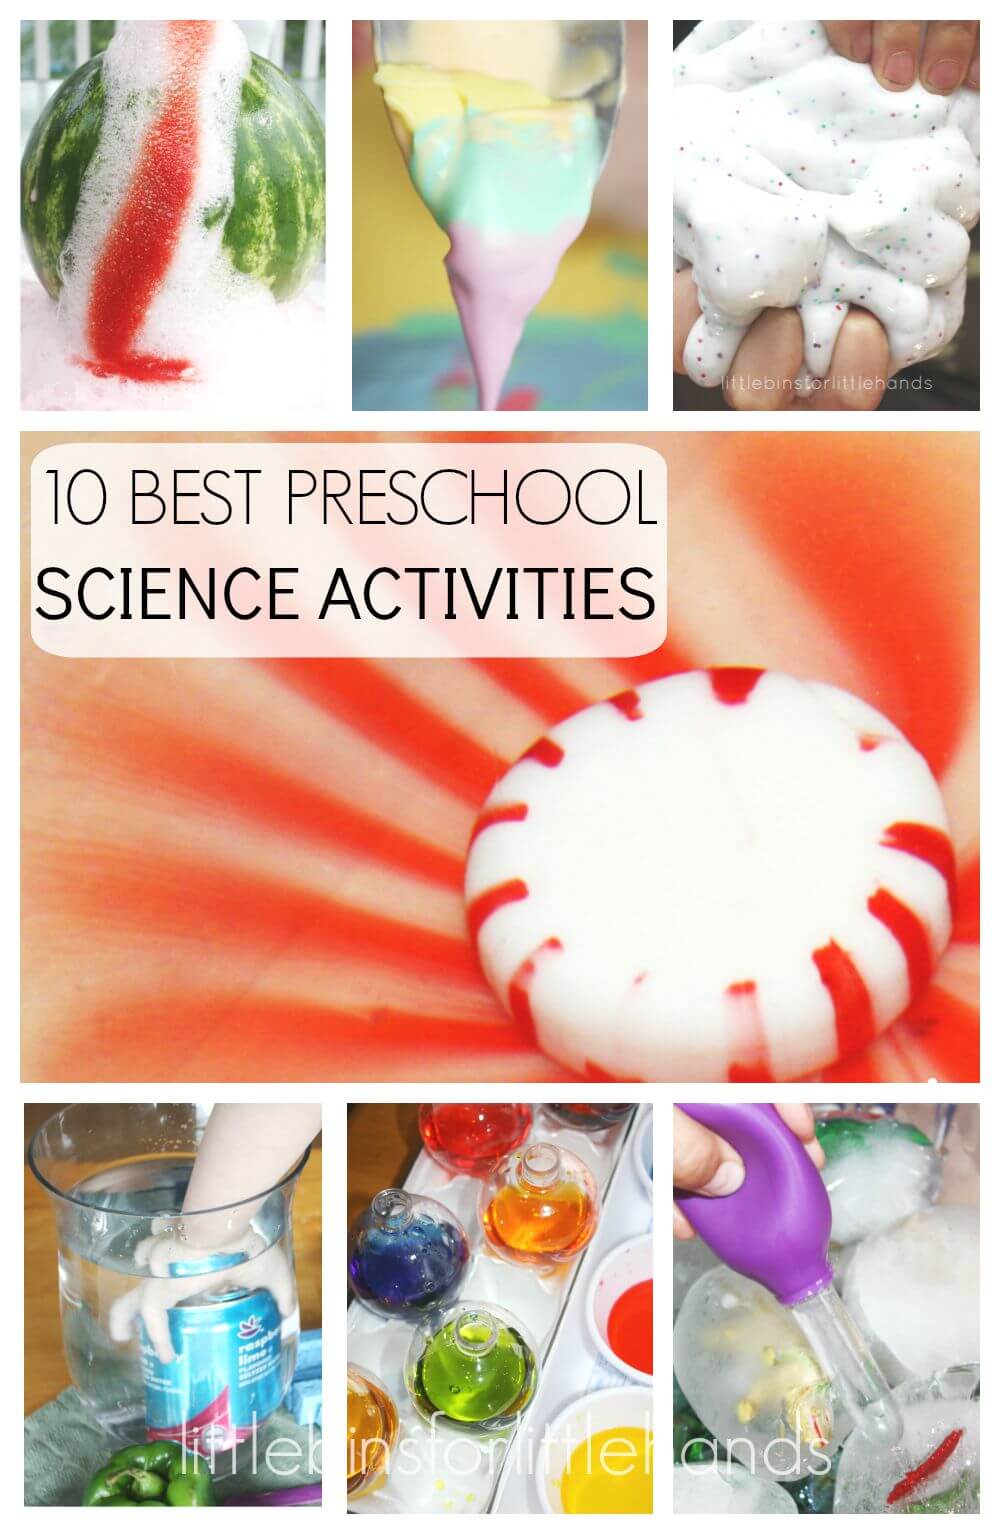 10 Best Preschool Science Activities back to School Preschool Science Experiments - Kindergarten Science Experiments